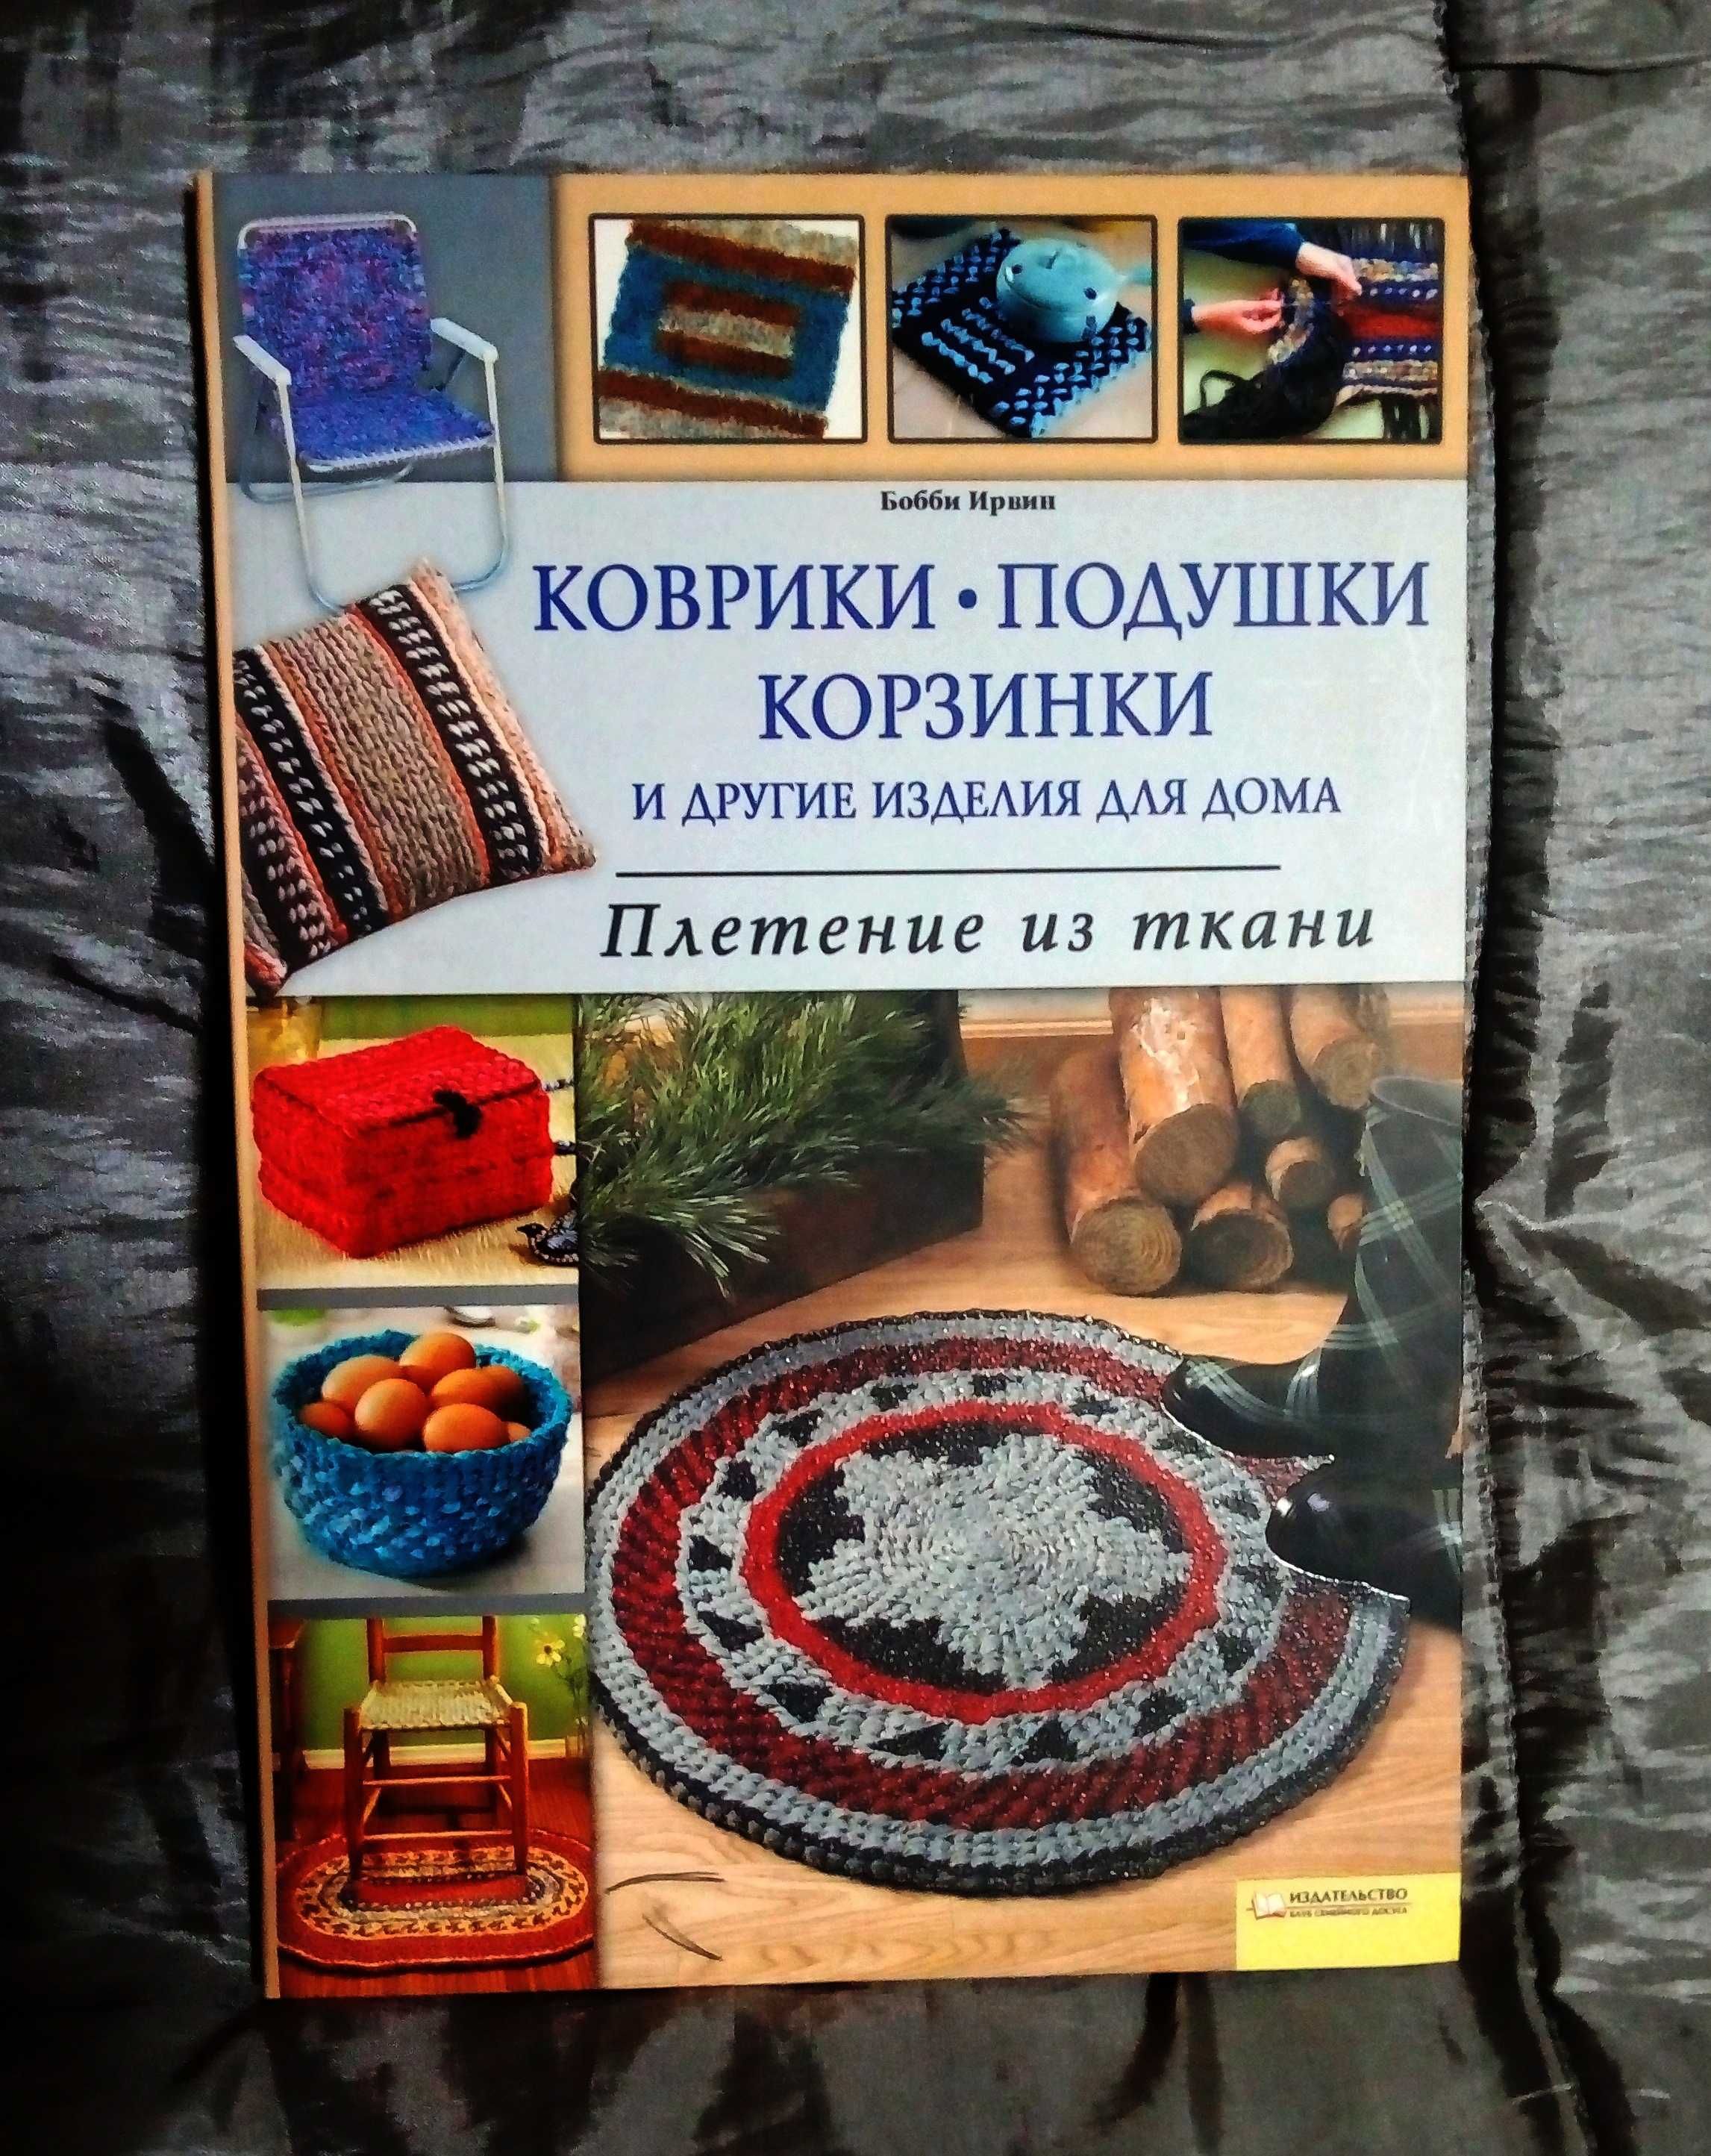 Книга "Плетение из ткани: коврики-подушки-корзинки".